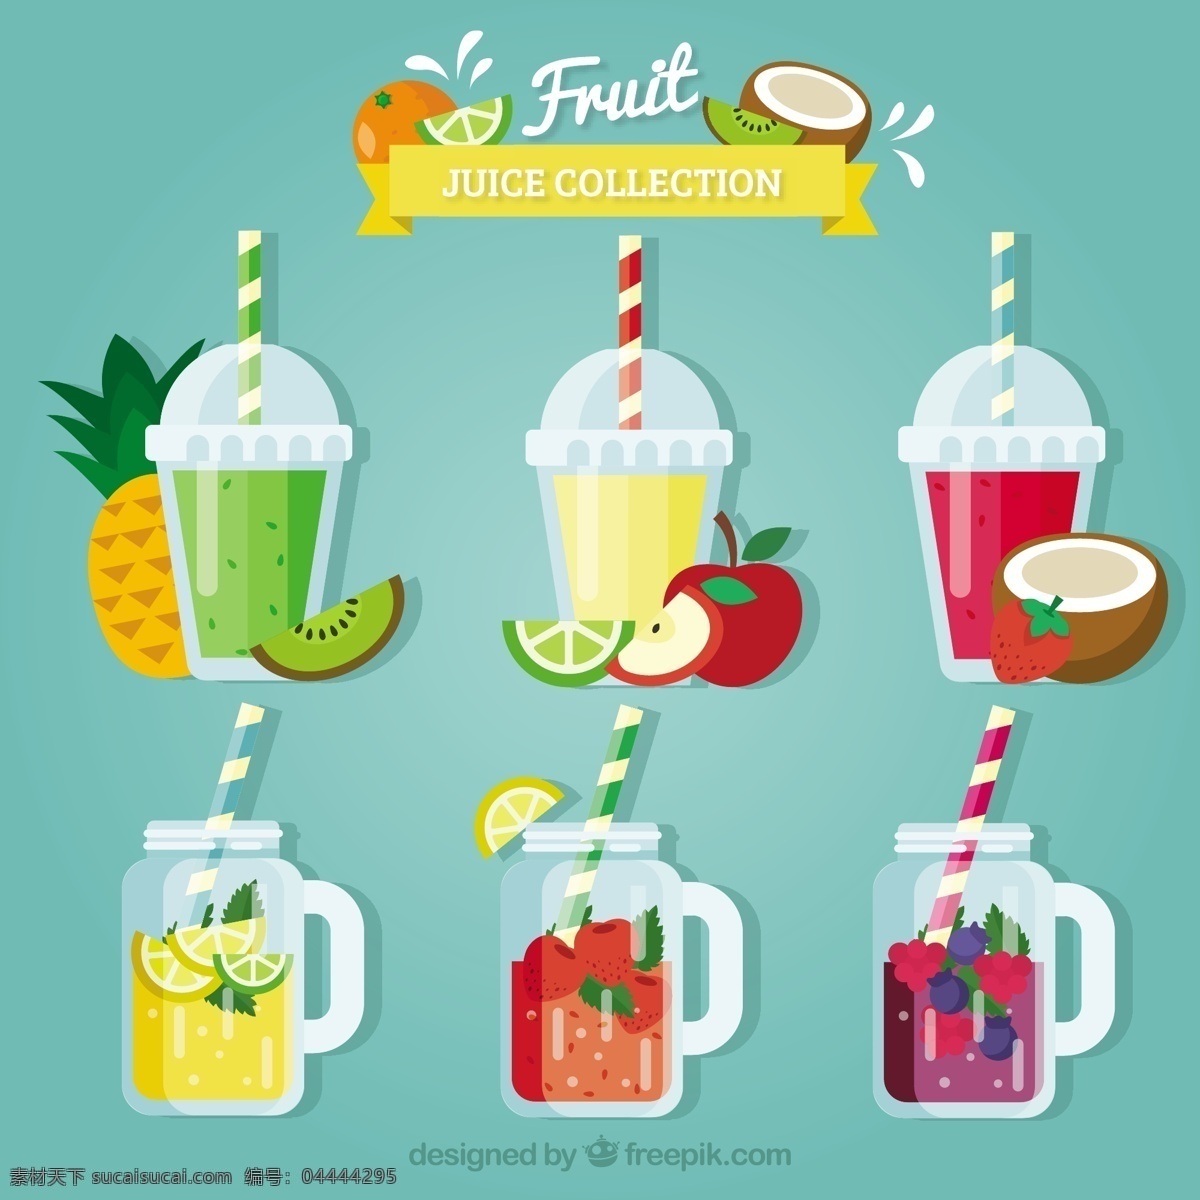 彩色 果汁 平面设计 中 设置 食品 夏季 水果 颜色 苹果 平板 玻璃 饮料 天然 健康 草莓 菠萝 椰子 吃 健康食品 饮食